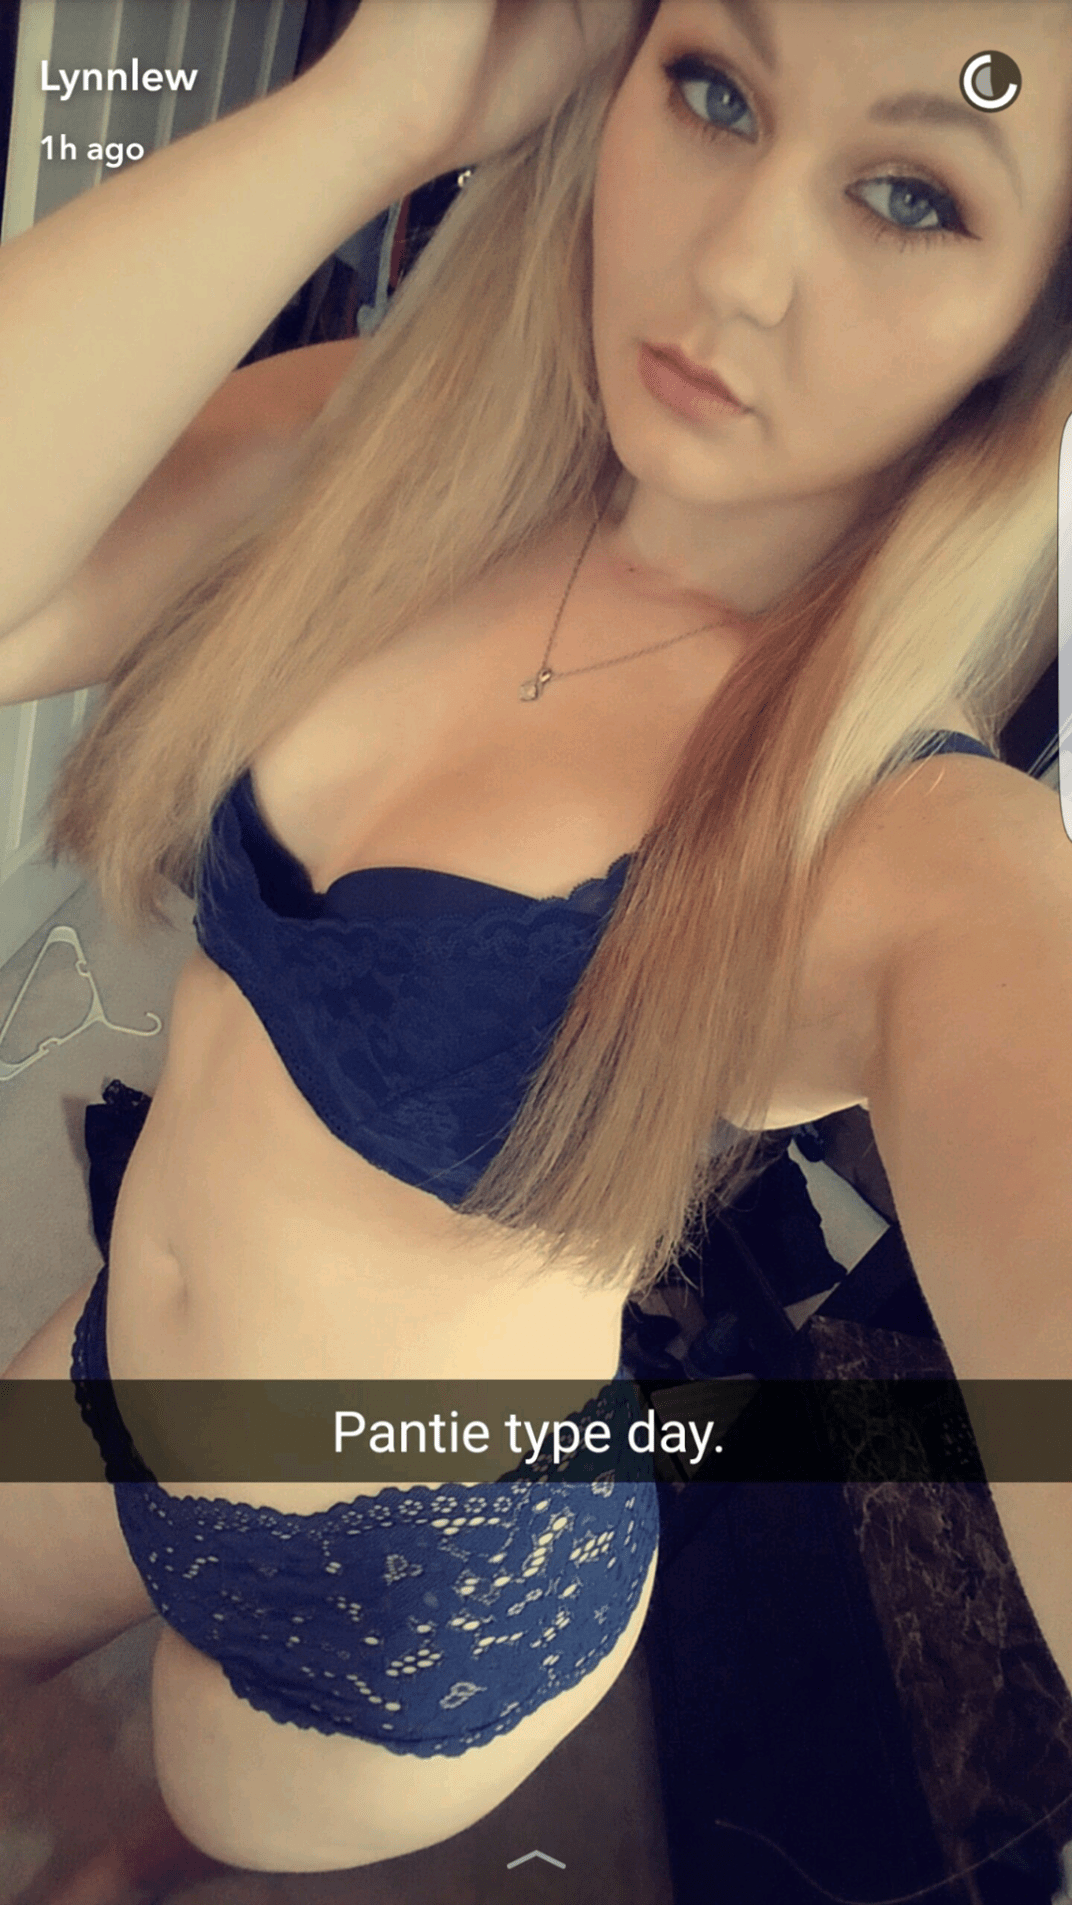 wisco teen blonde selfie panty snapchat nude gallerie